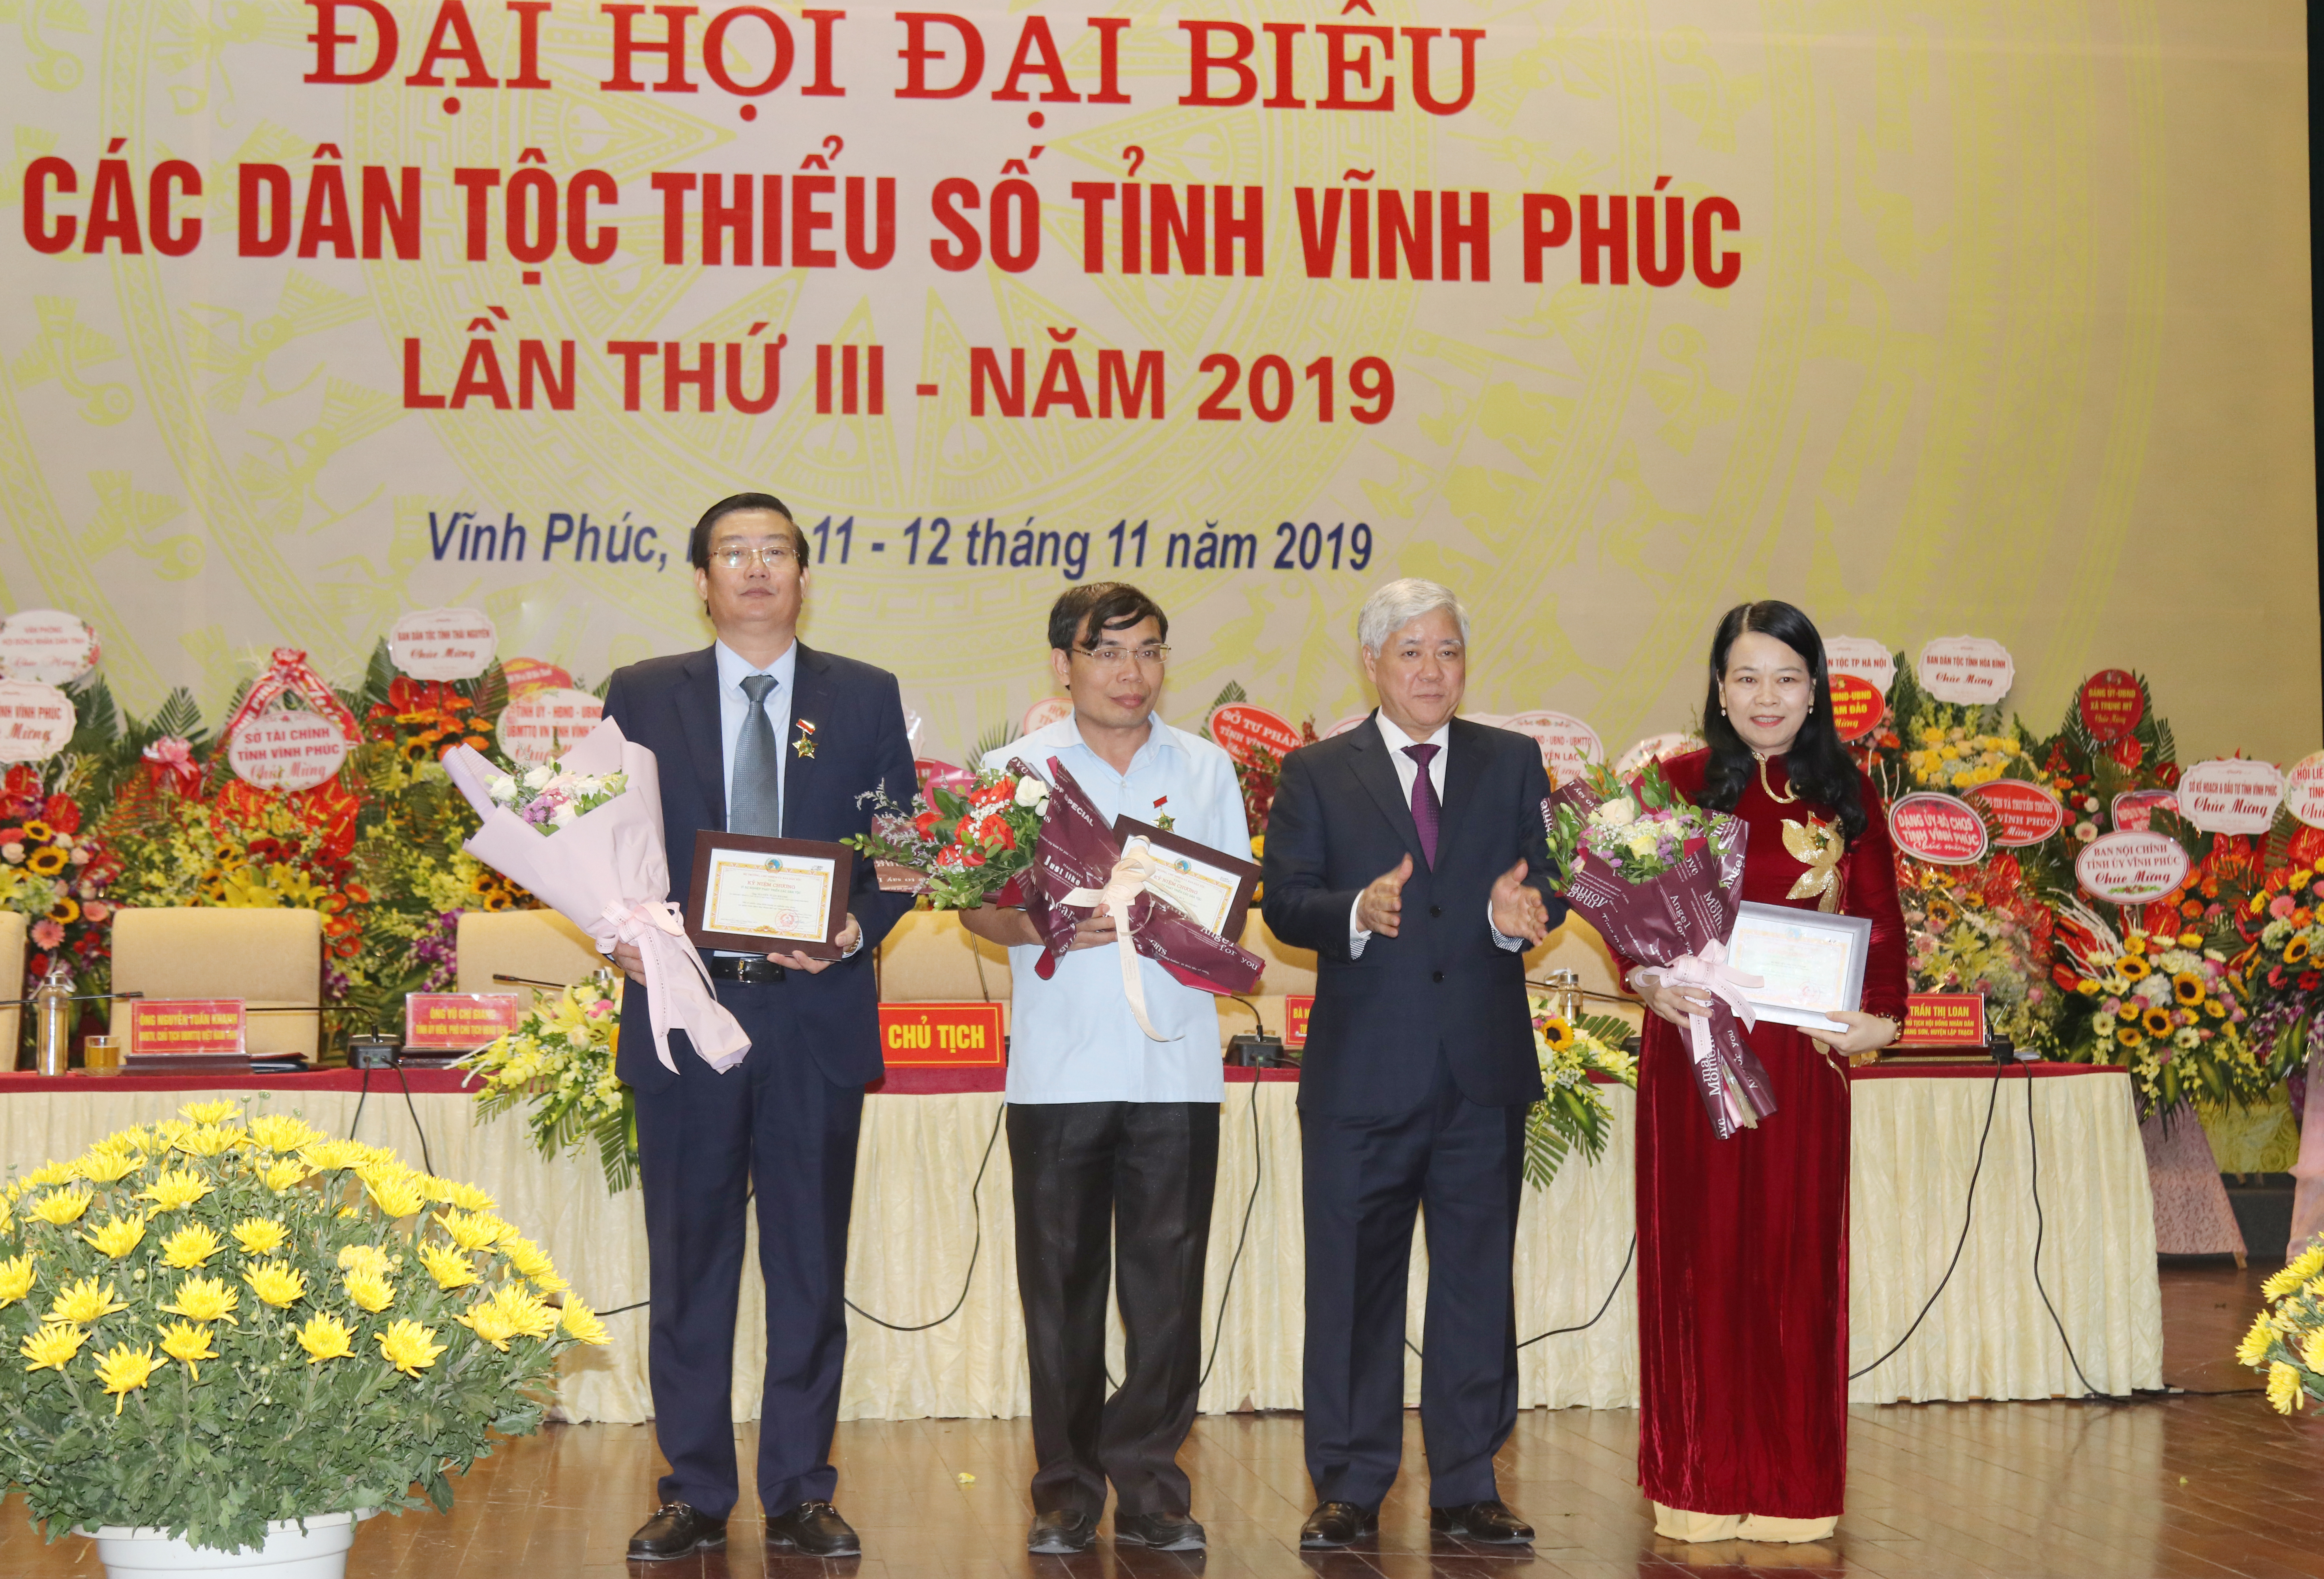 Bộ trưởng, Chủ nhiệm UBDT Đỗ Văn Chiến trao Kỷ niệm chương vì sự nghiệp phát triển các dân tộc cho các cá nhân